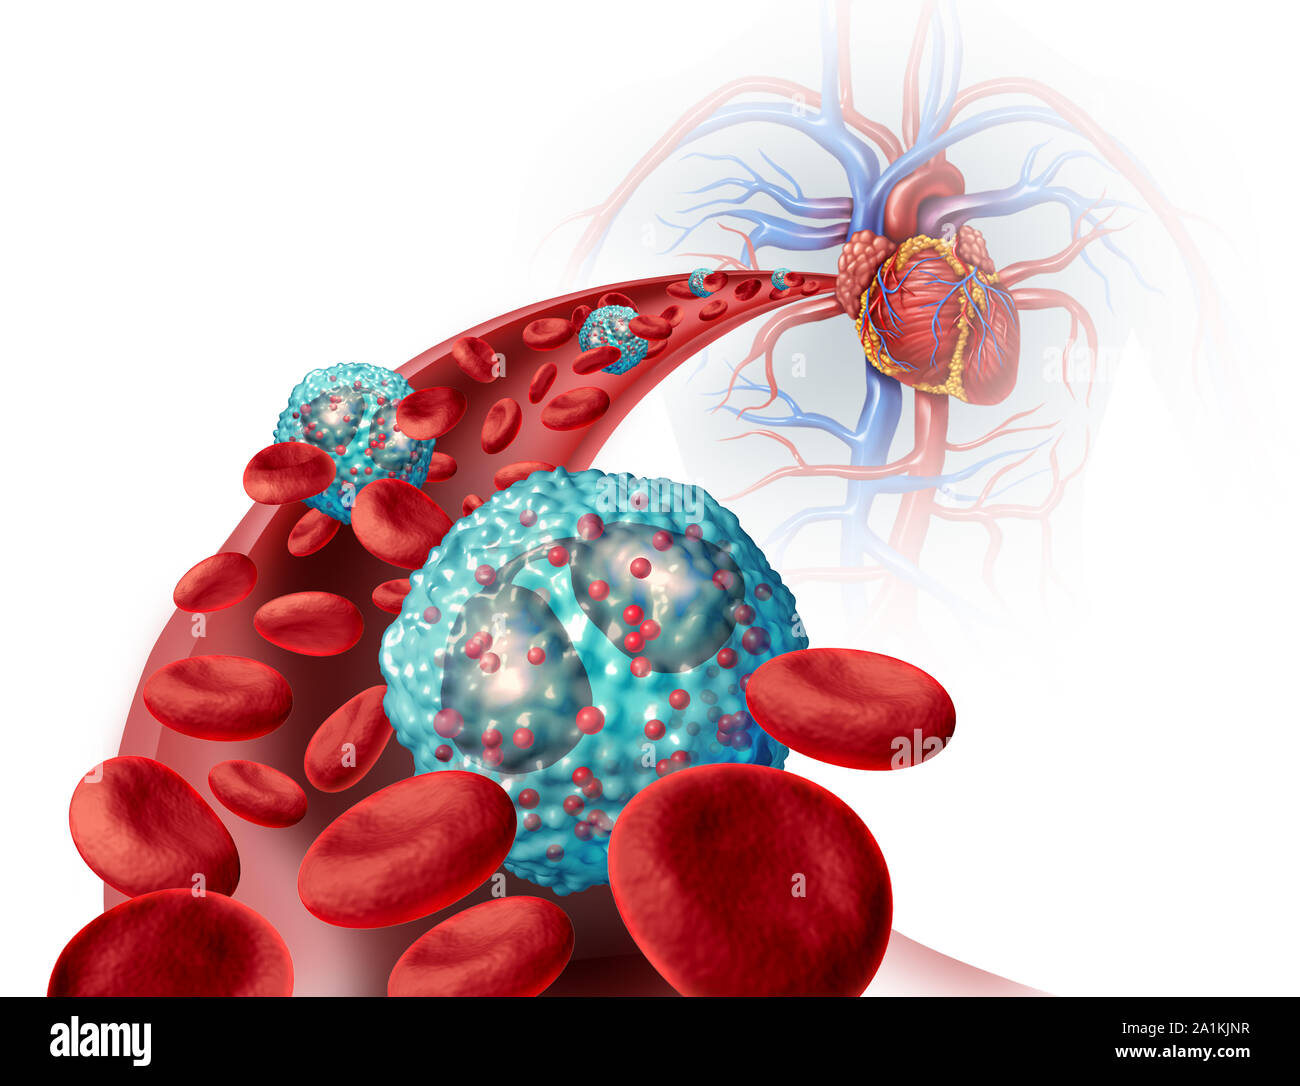 Eosinophilen weißen Blutkörperchen im menschlichen Körper, das Immunsystem und Allergien oder Asthma medizinischen Zustand als Zellen innerhalb einer Arterie. Stockfoto